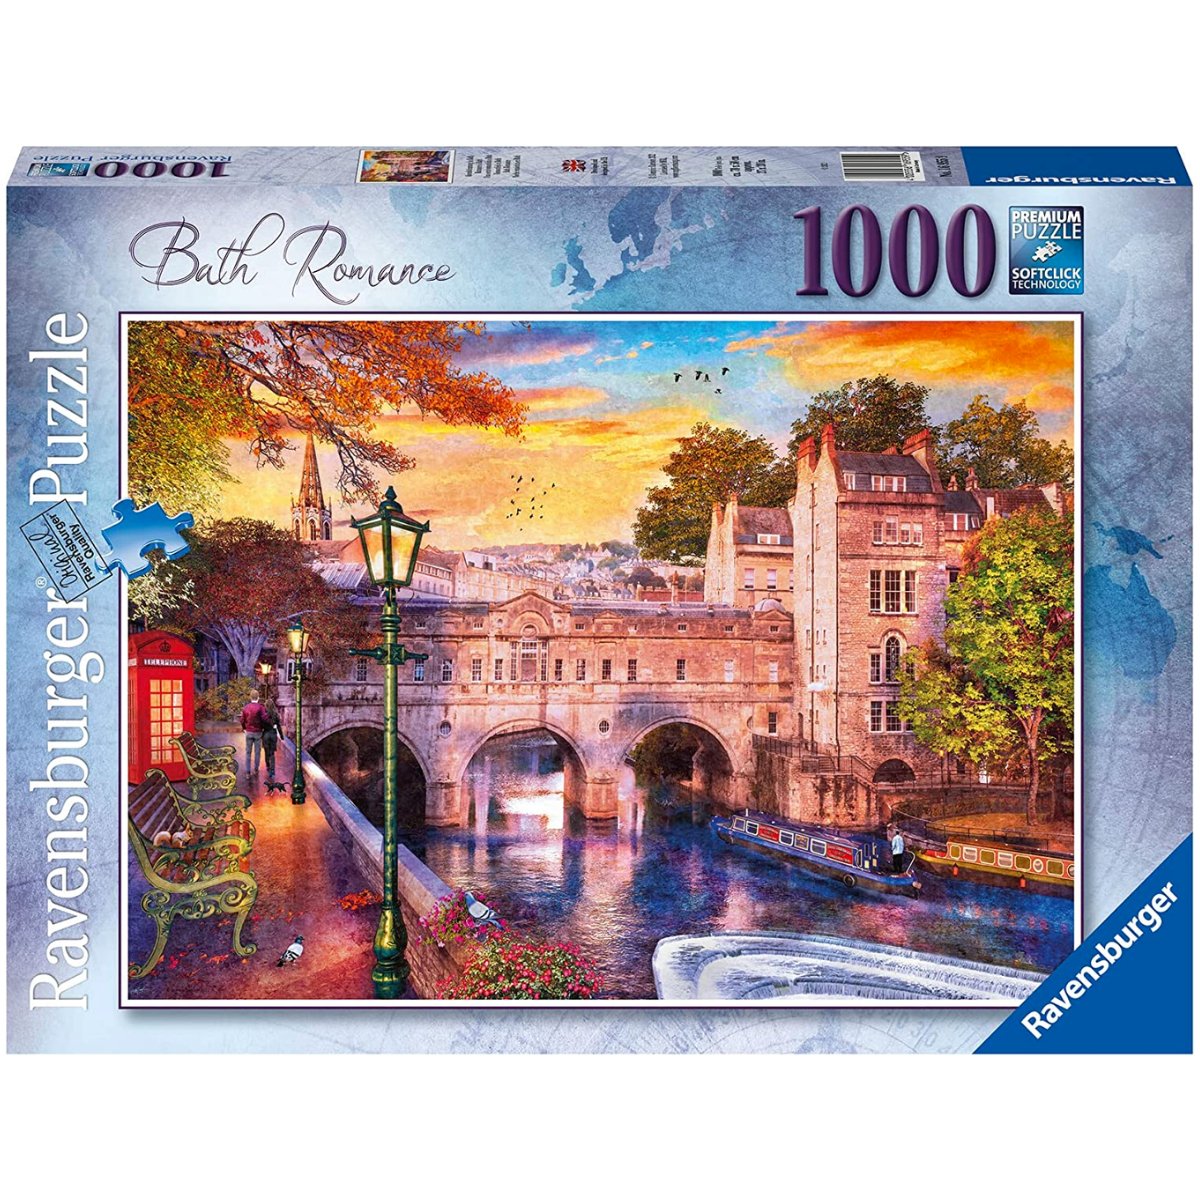 Ravensburger Bath Romance 1000 Piece Jigsaw Puzzle - Phillips Hobbies